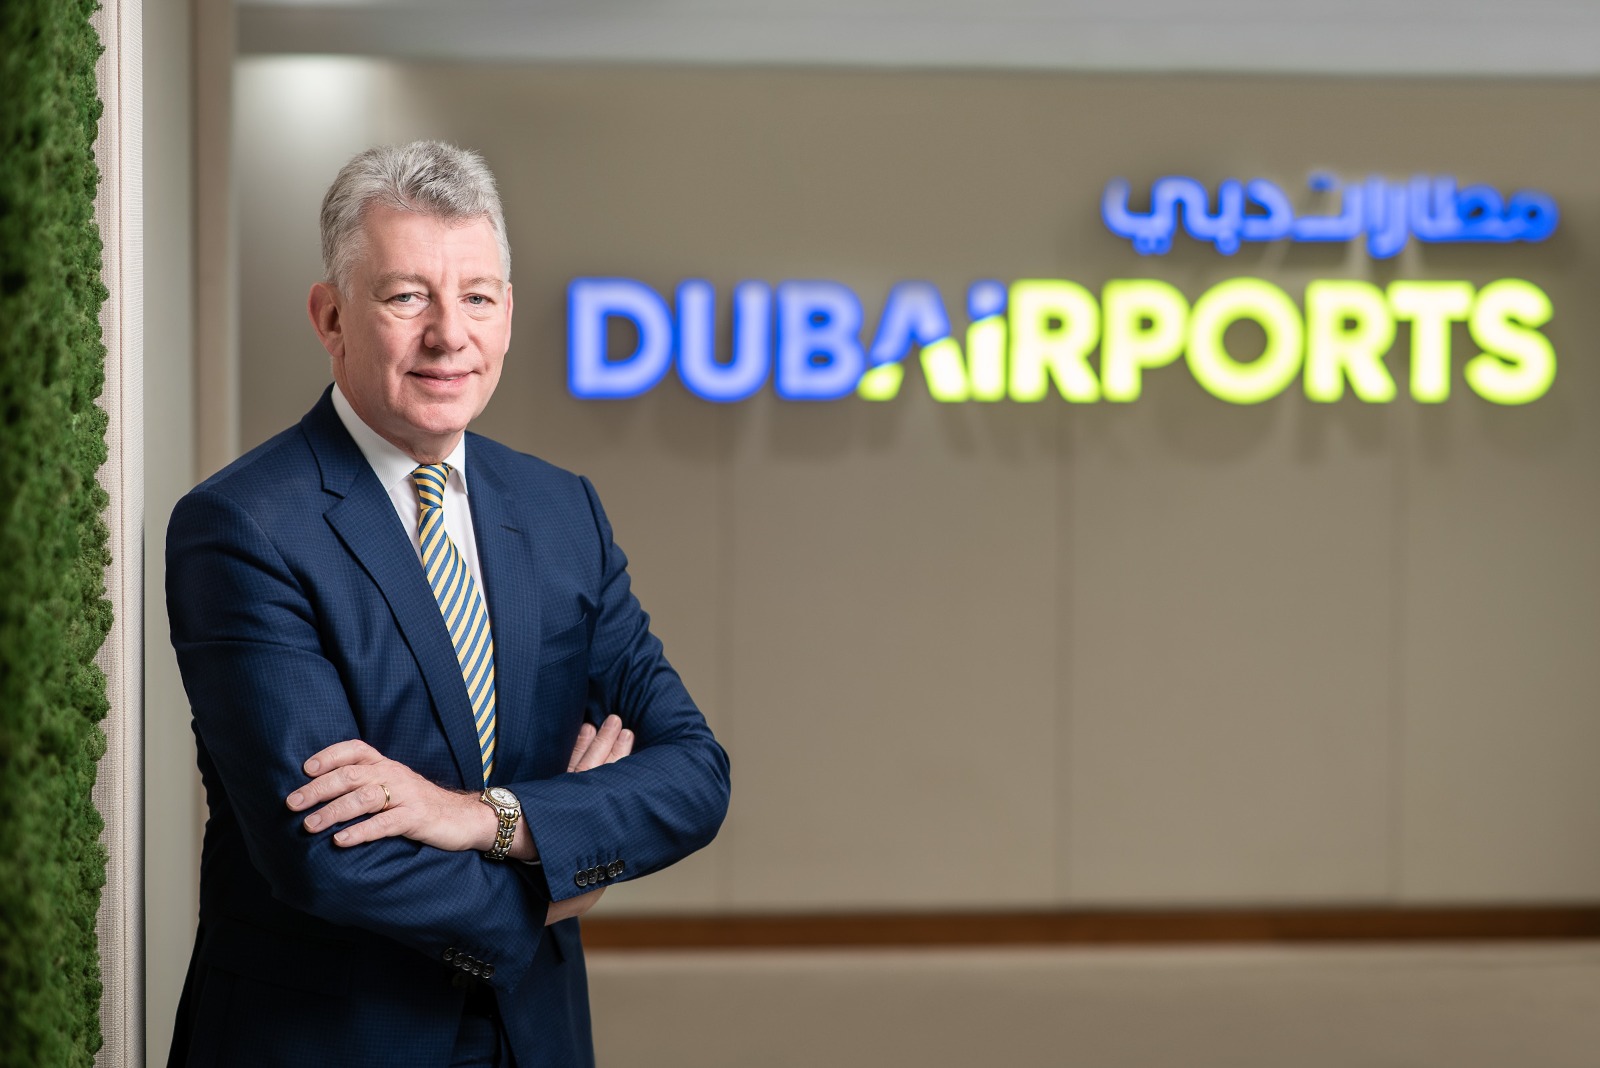 بول غريفيث: مطارات دبي تبذل جهوداً حثيثة لإعادة العمليات لطبيعتها